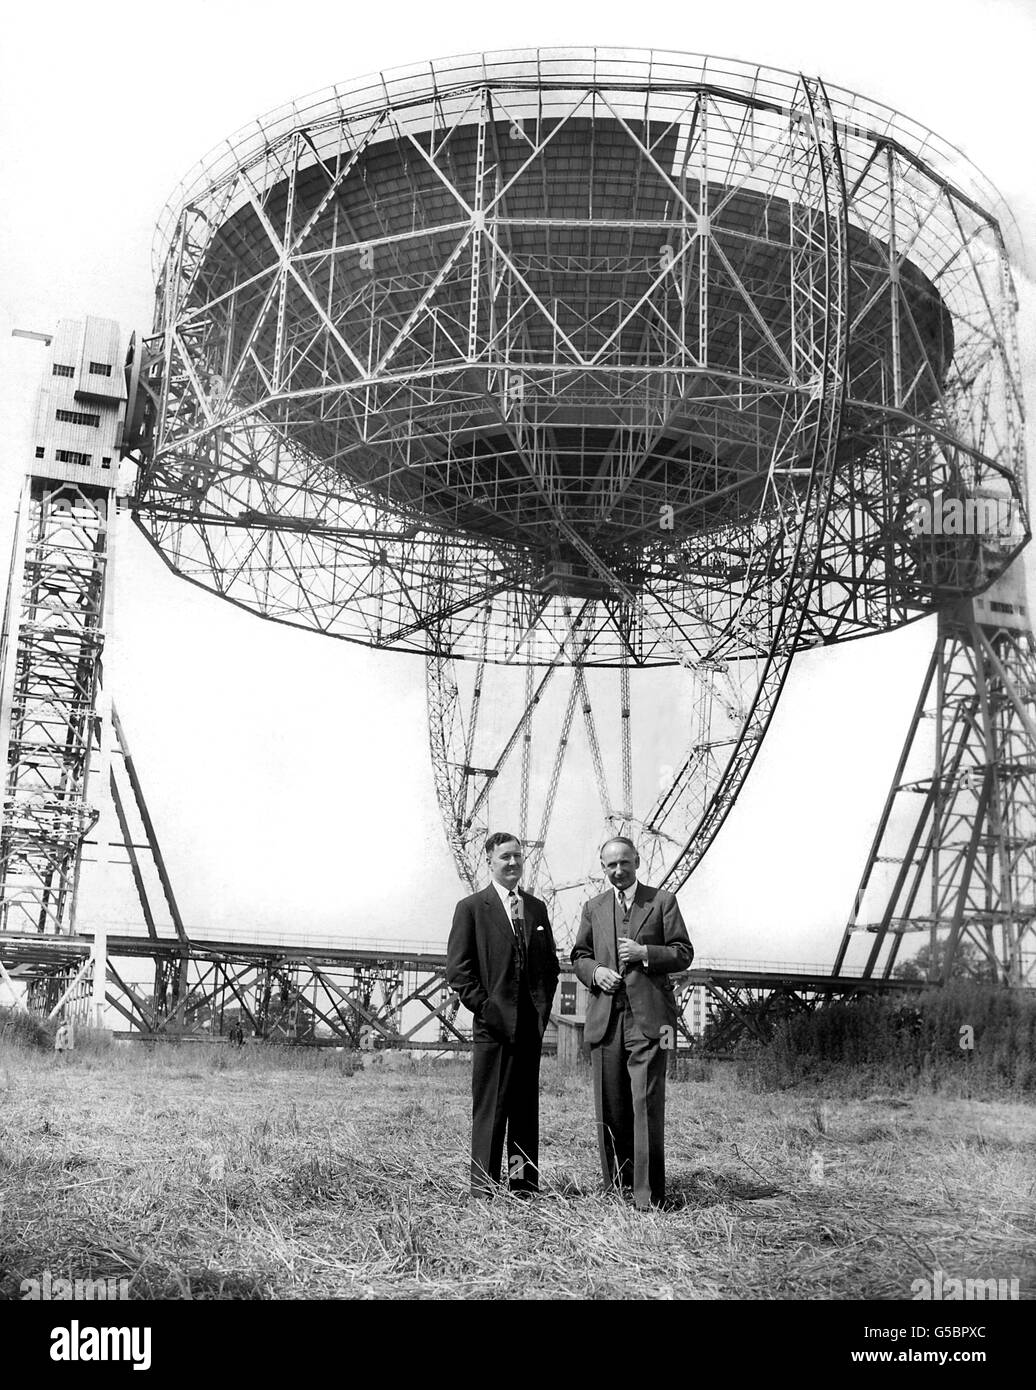 Professor Bernard Lovell (r), der Direktor des Jodrell Bank Establishment sein wird, und Herr H.C. Ehemann, der beratende Ingenieur, der das riesige Radioteleskop entworfen und gebaut hat. Stockfoto